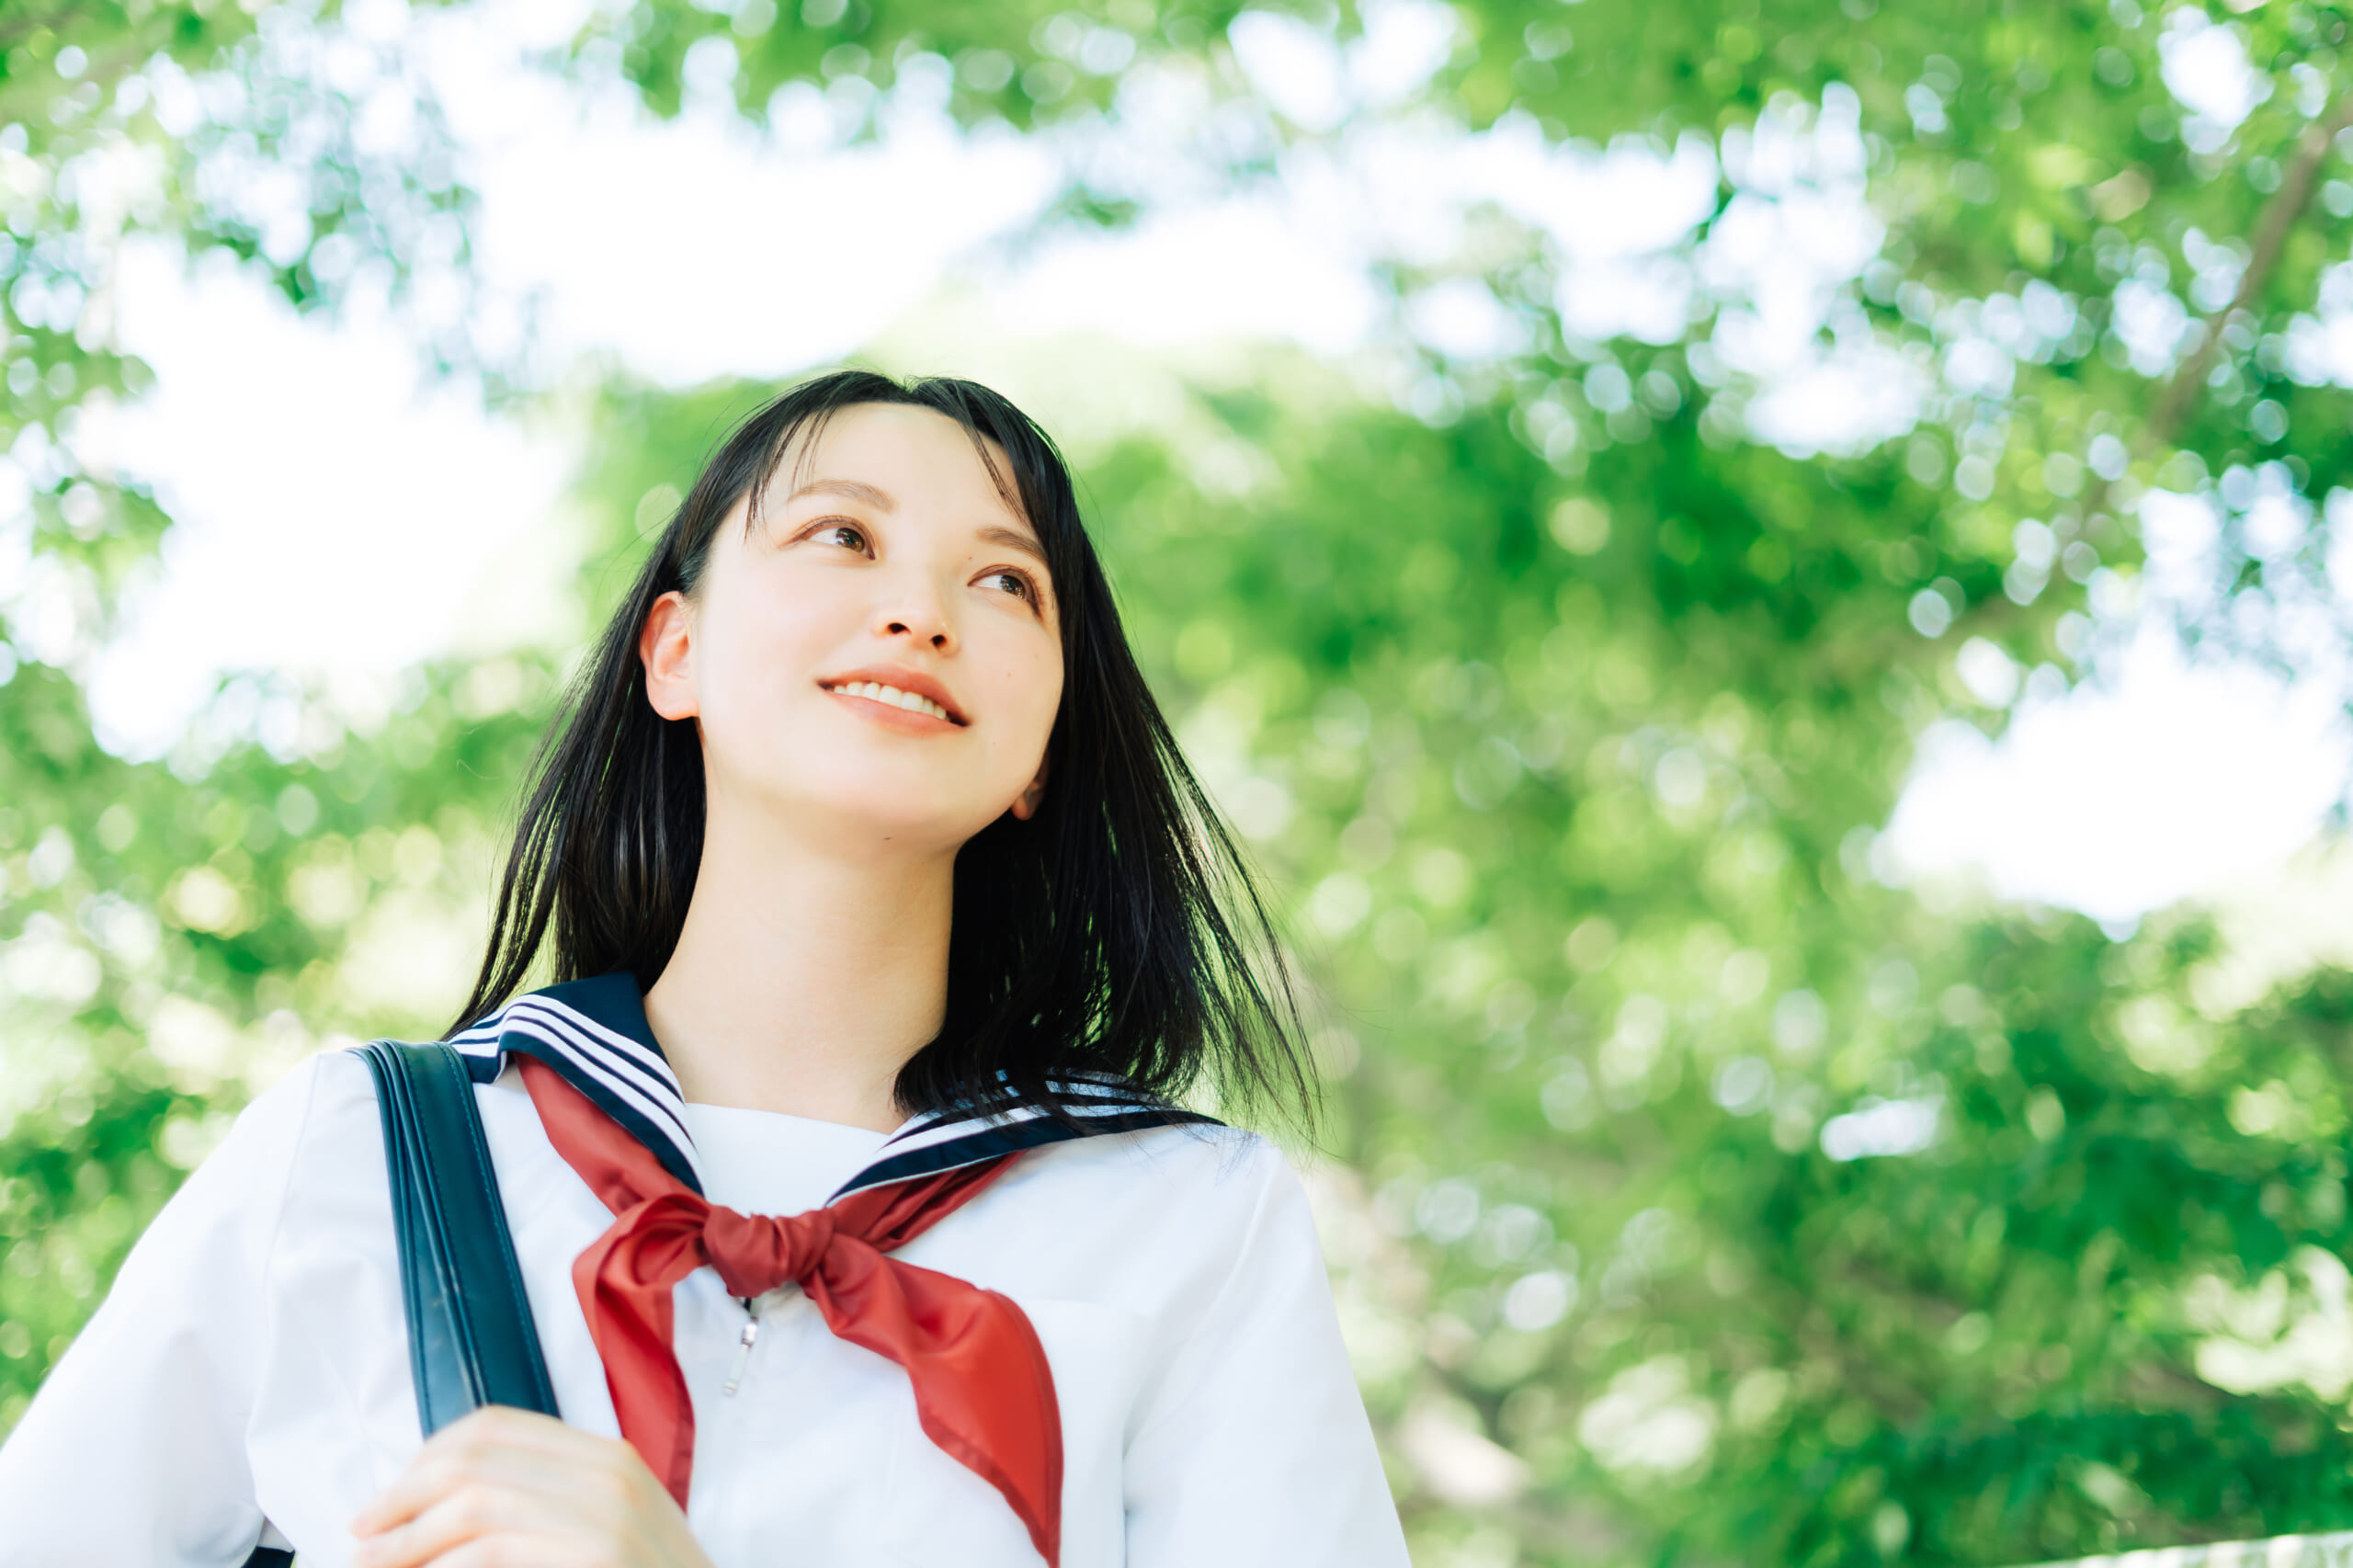 前を向く女学生の写真、背景には新緑に囲まれた青空